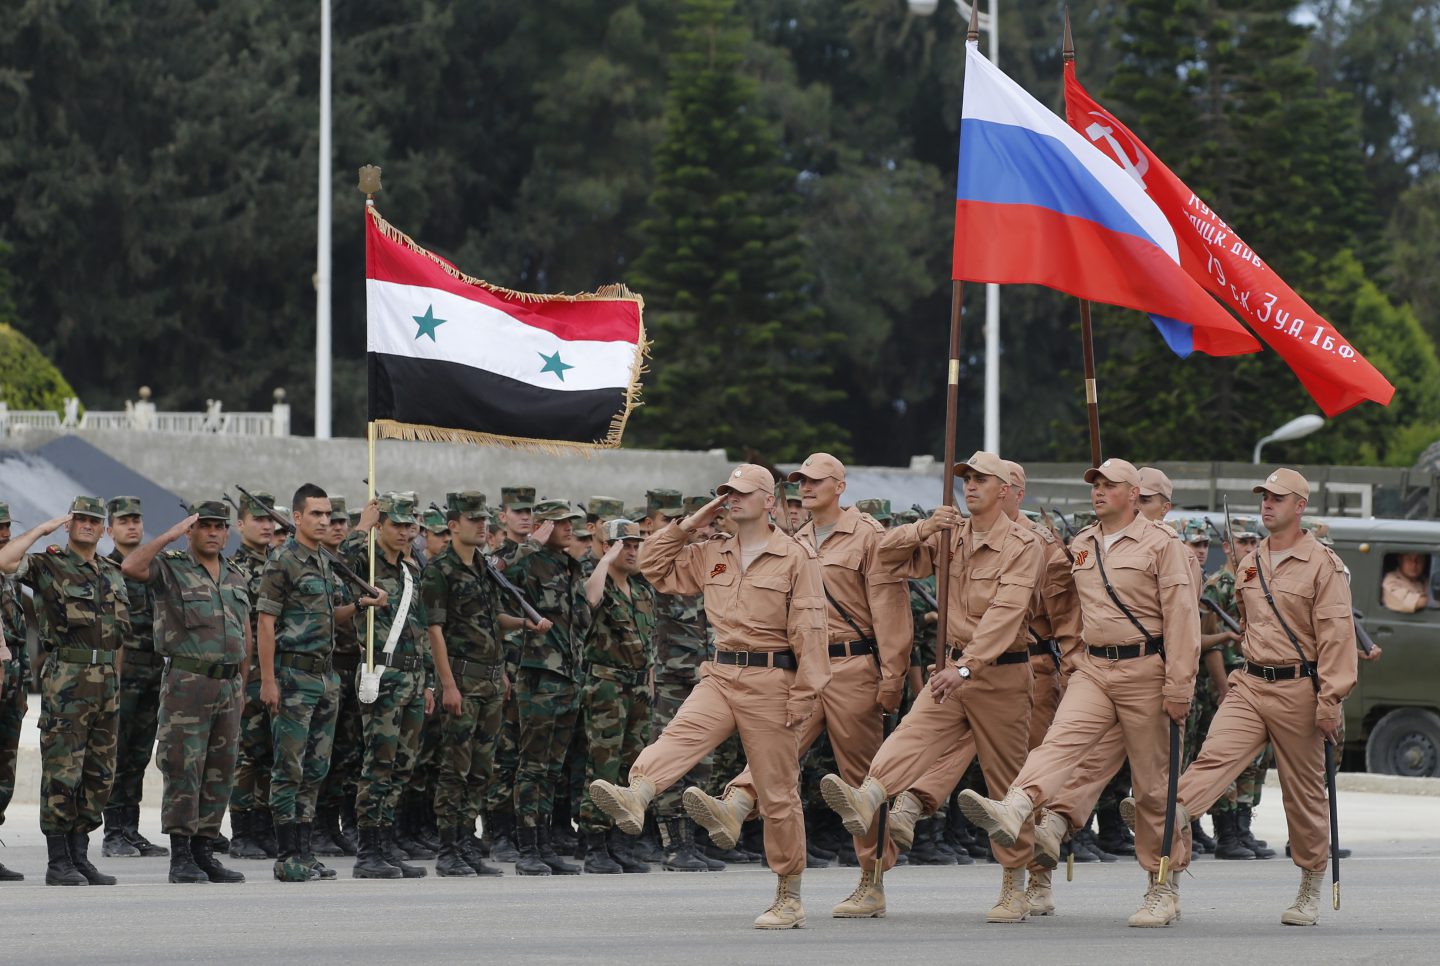 قوات روسيا في سوريا